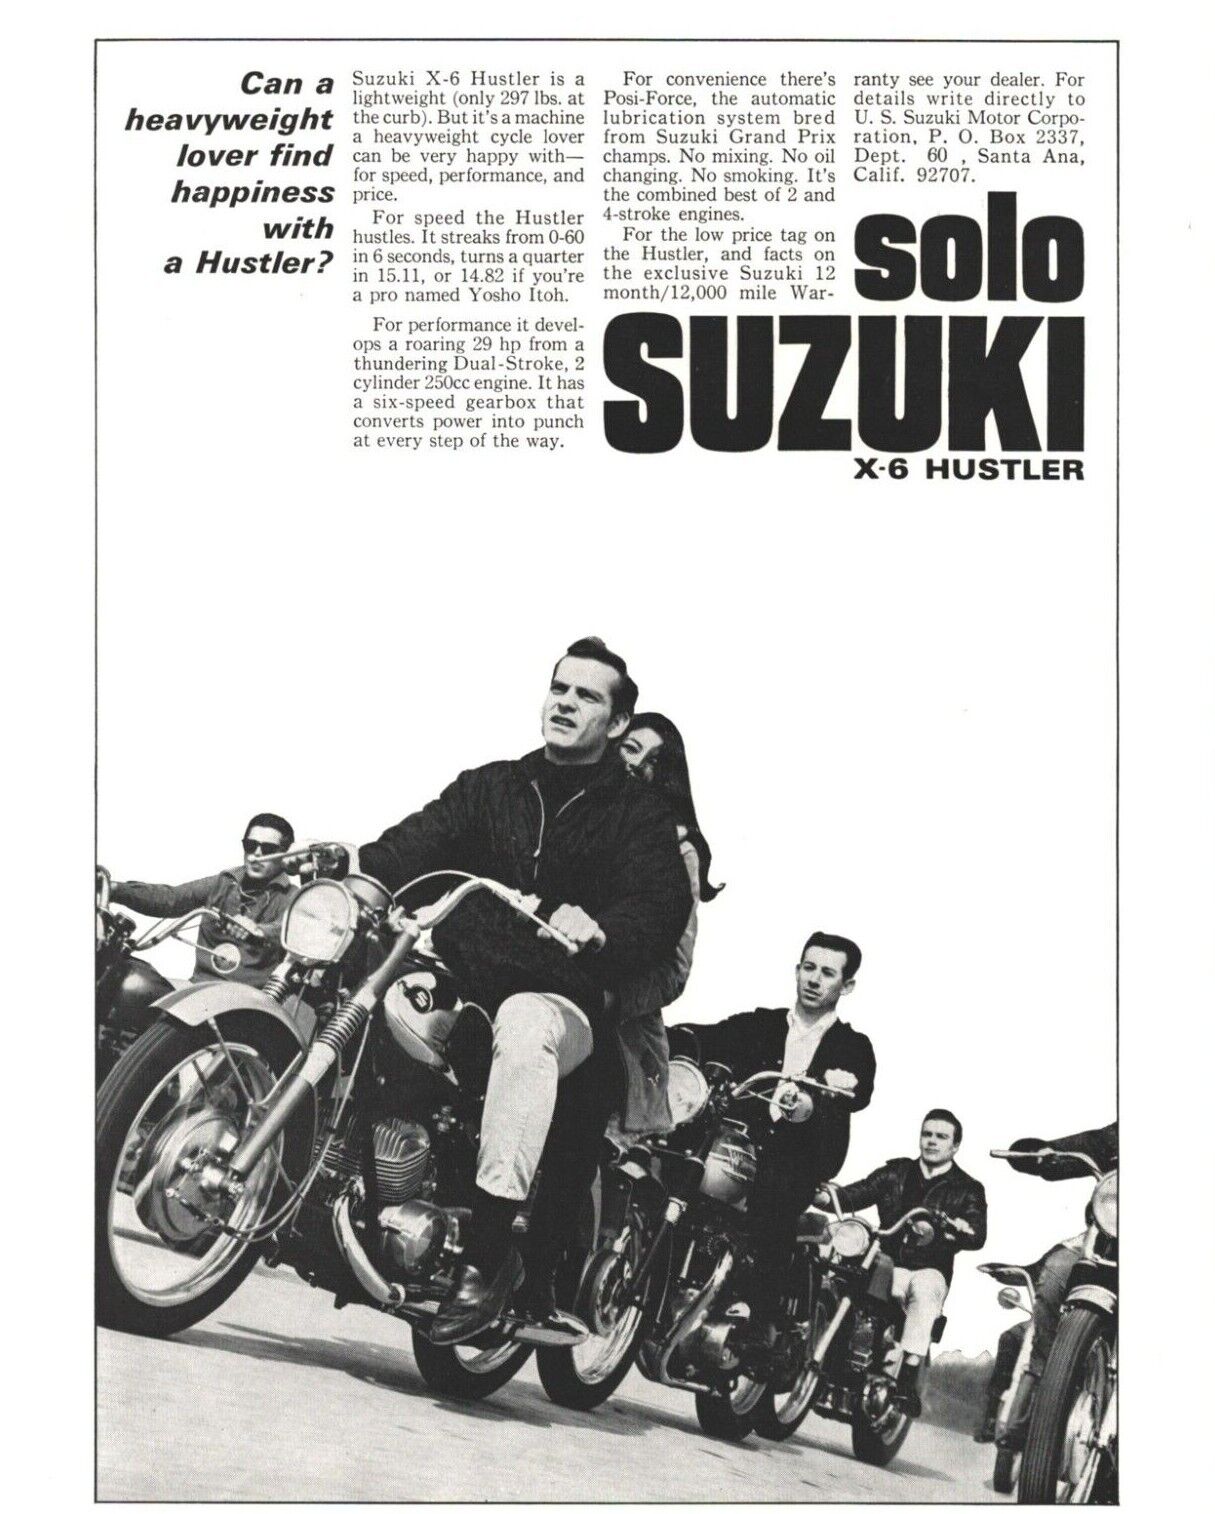 1966 Suzuki X-6 Hustler 250 - Vintage Motorcycle Ad